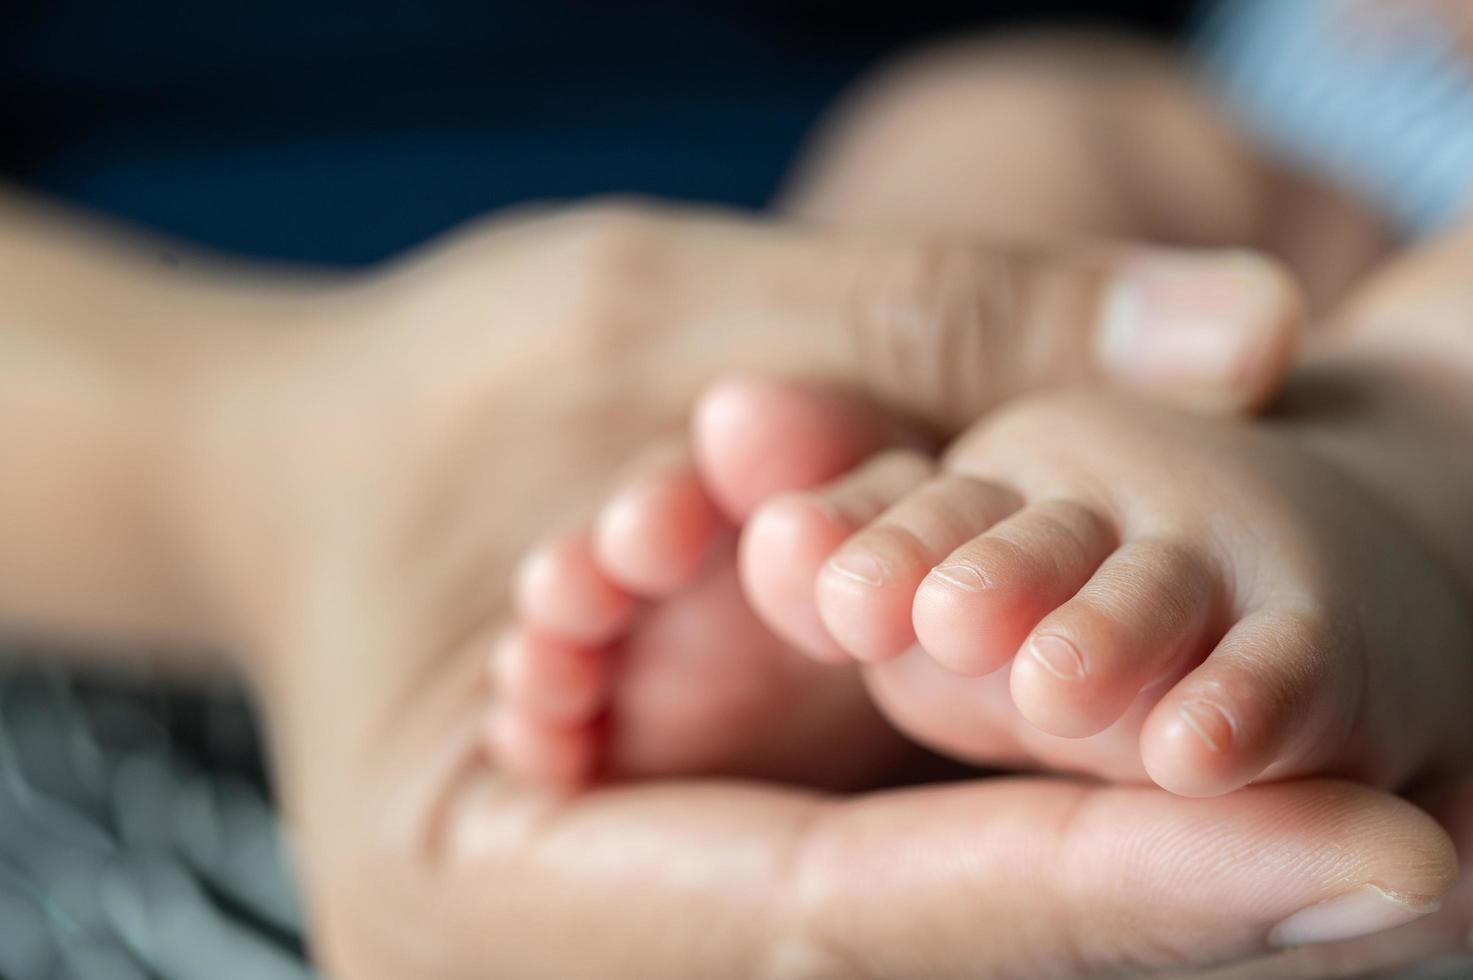 manos de las madres sosteniendo los pies del bebé foto